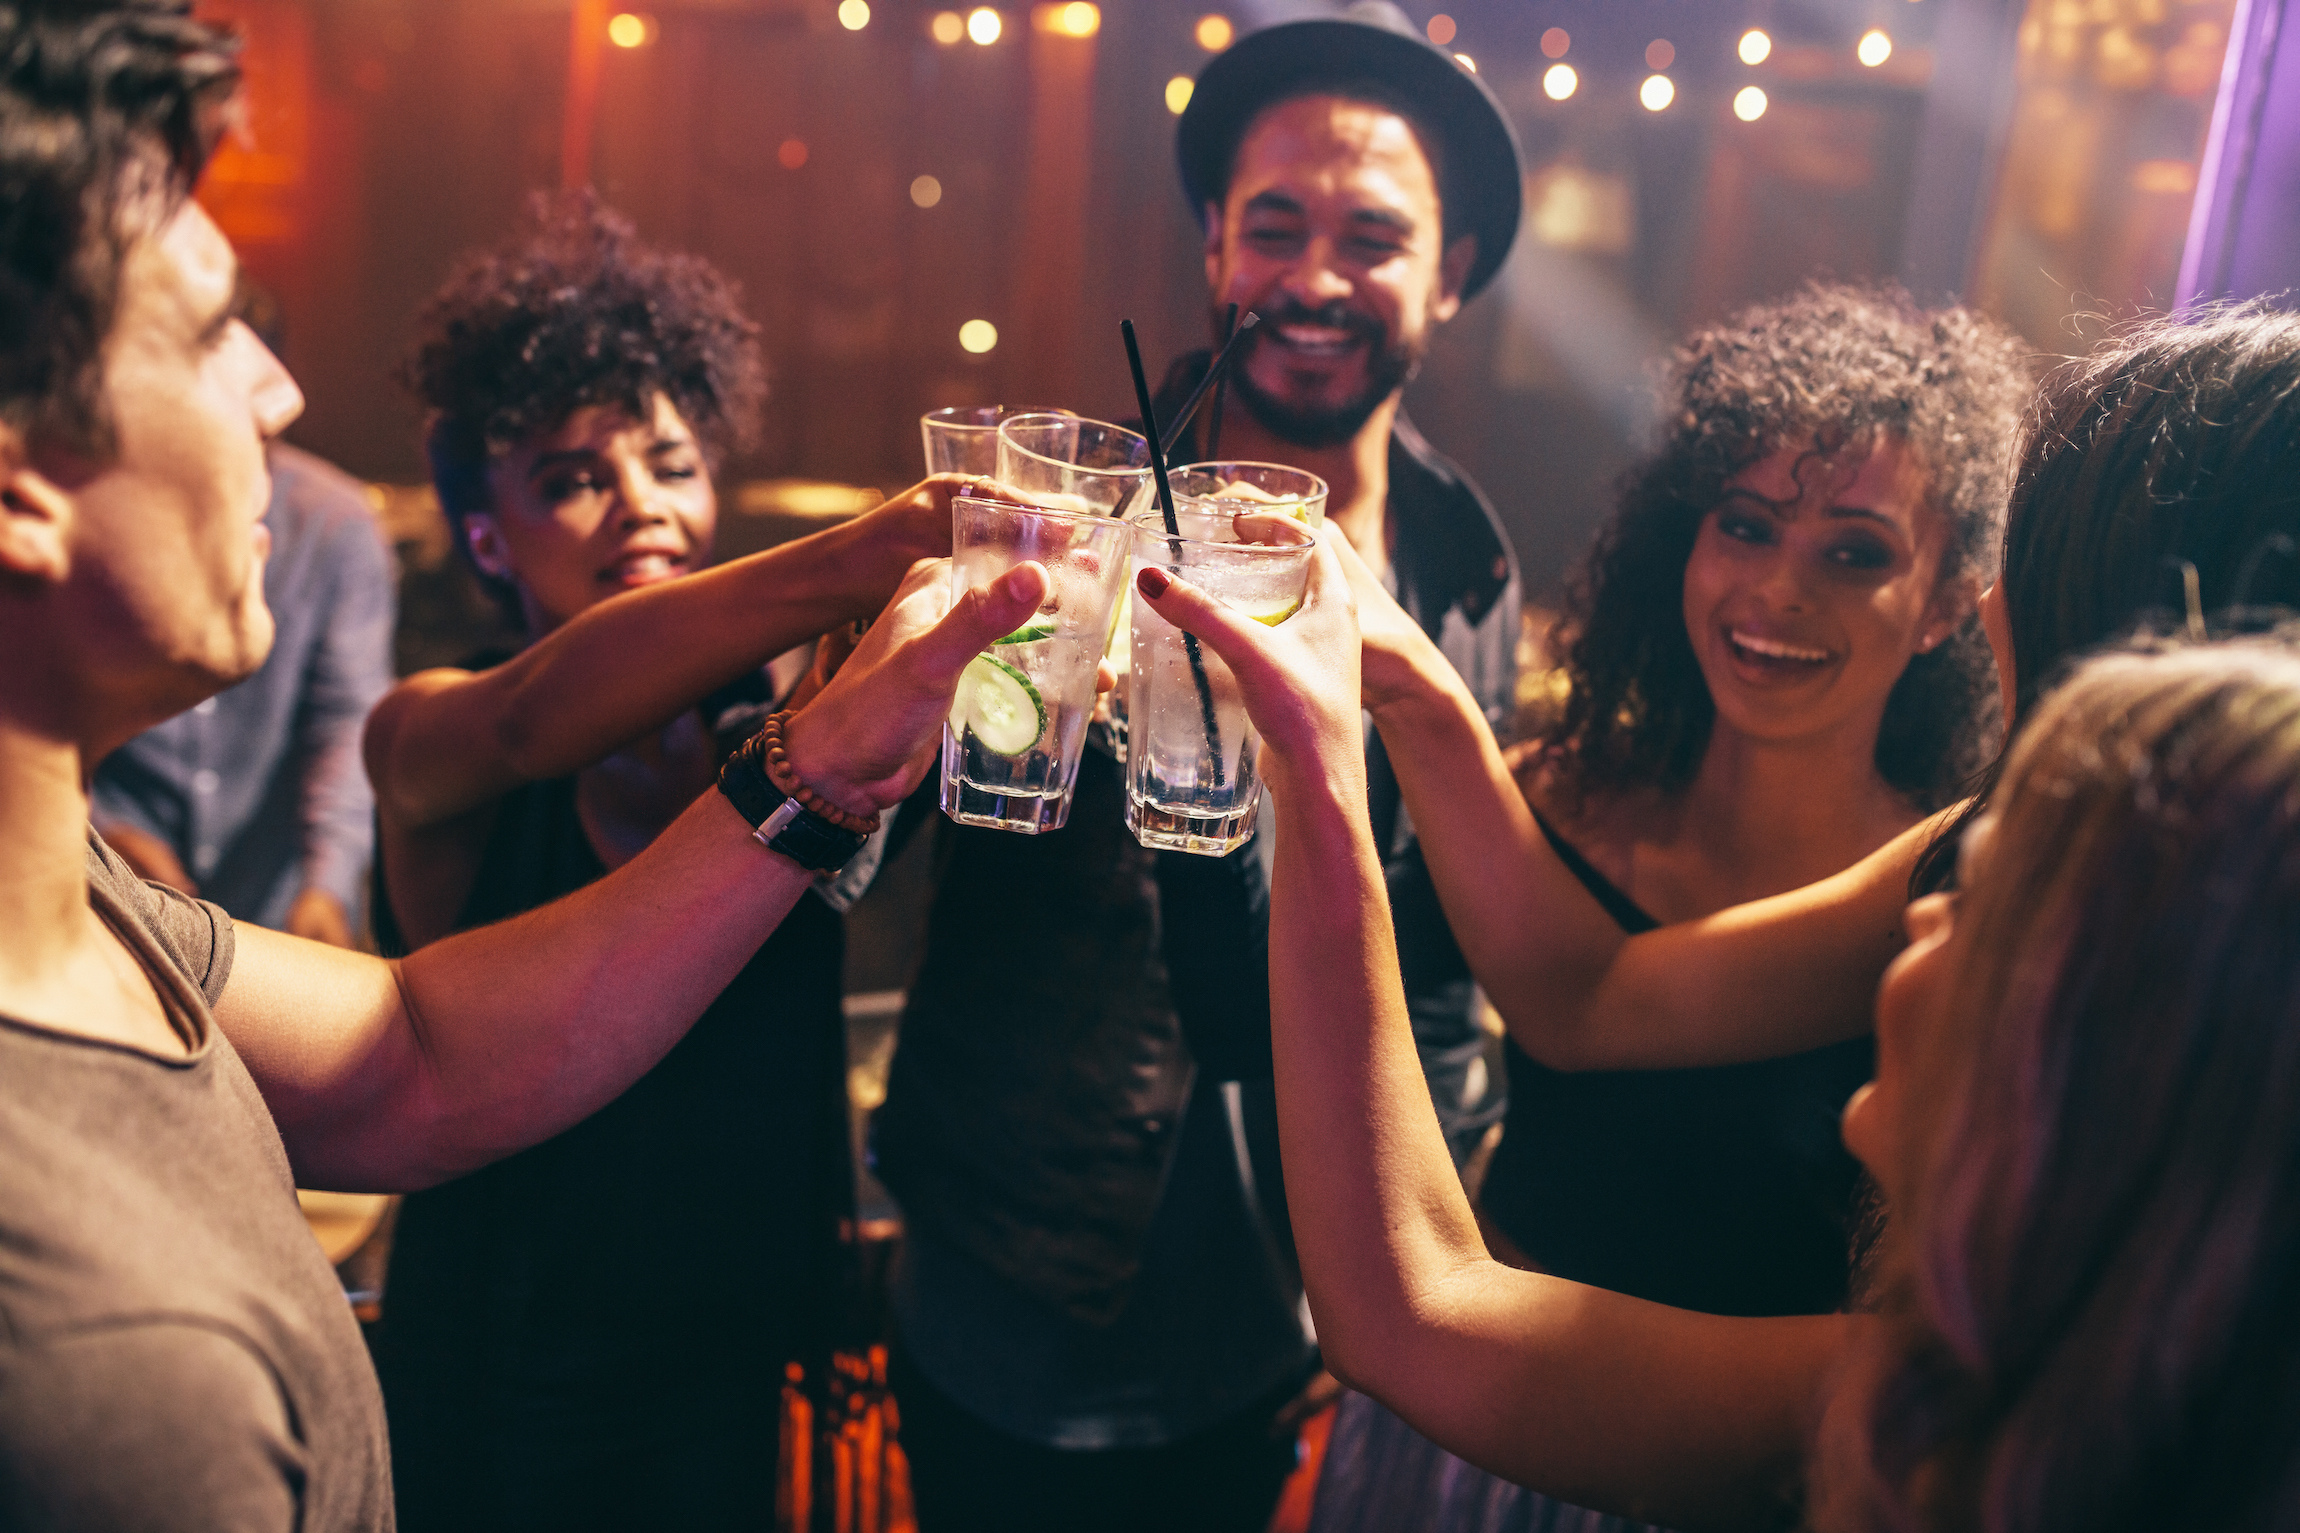 Grupa przyjaciół pijących drinki na imprezie w klubie nocnym. Młodzi ludzie cieszą się w barze opiekającym się koktajlami.